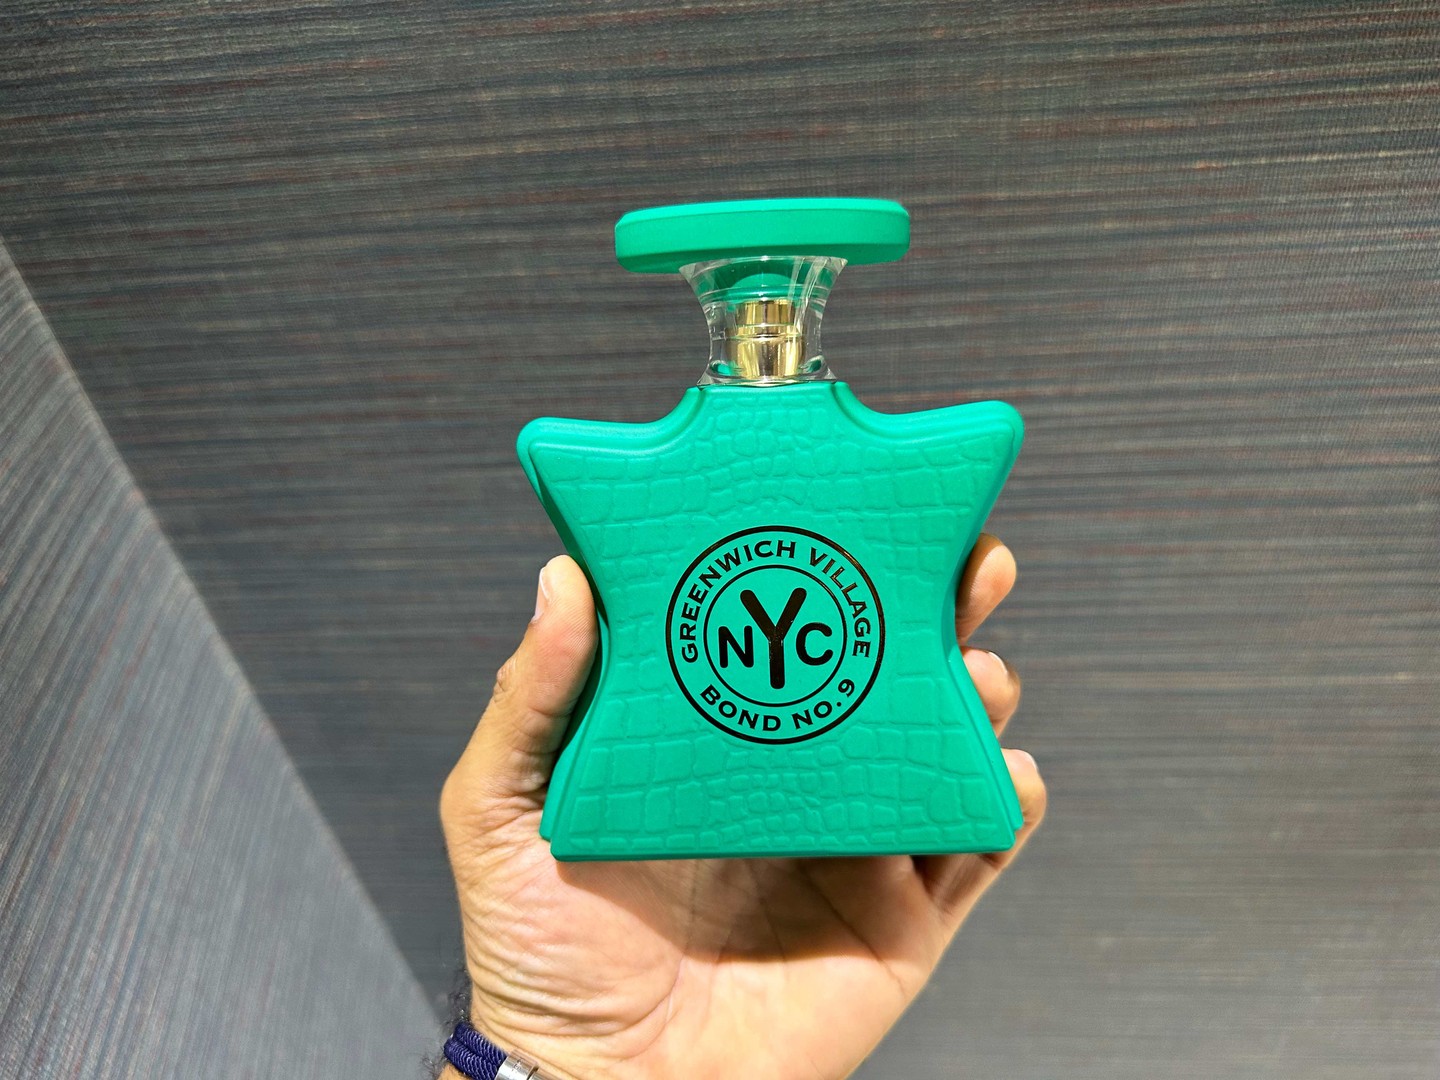 joyas, relojes y accesorios - Perfumes Bond NO.9 Greenwich Village NYC Nuevo 100% Original RD$ 17,500 NEG 0